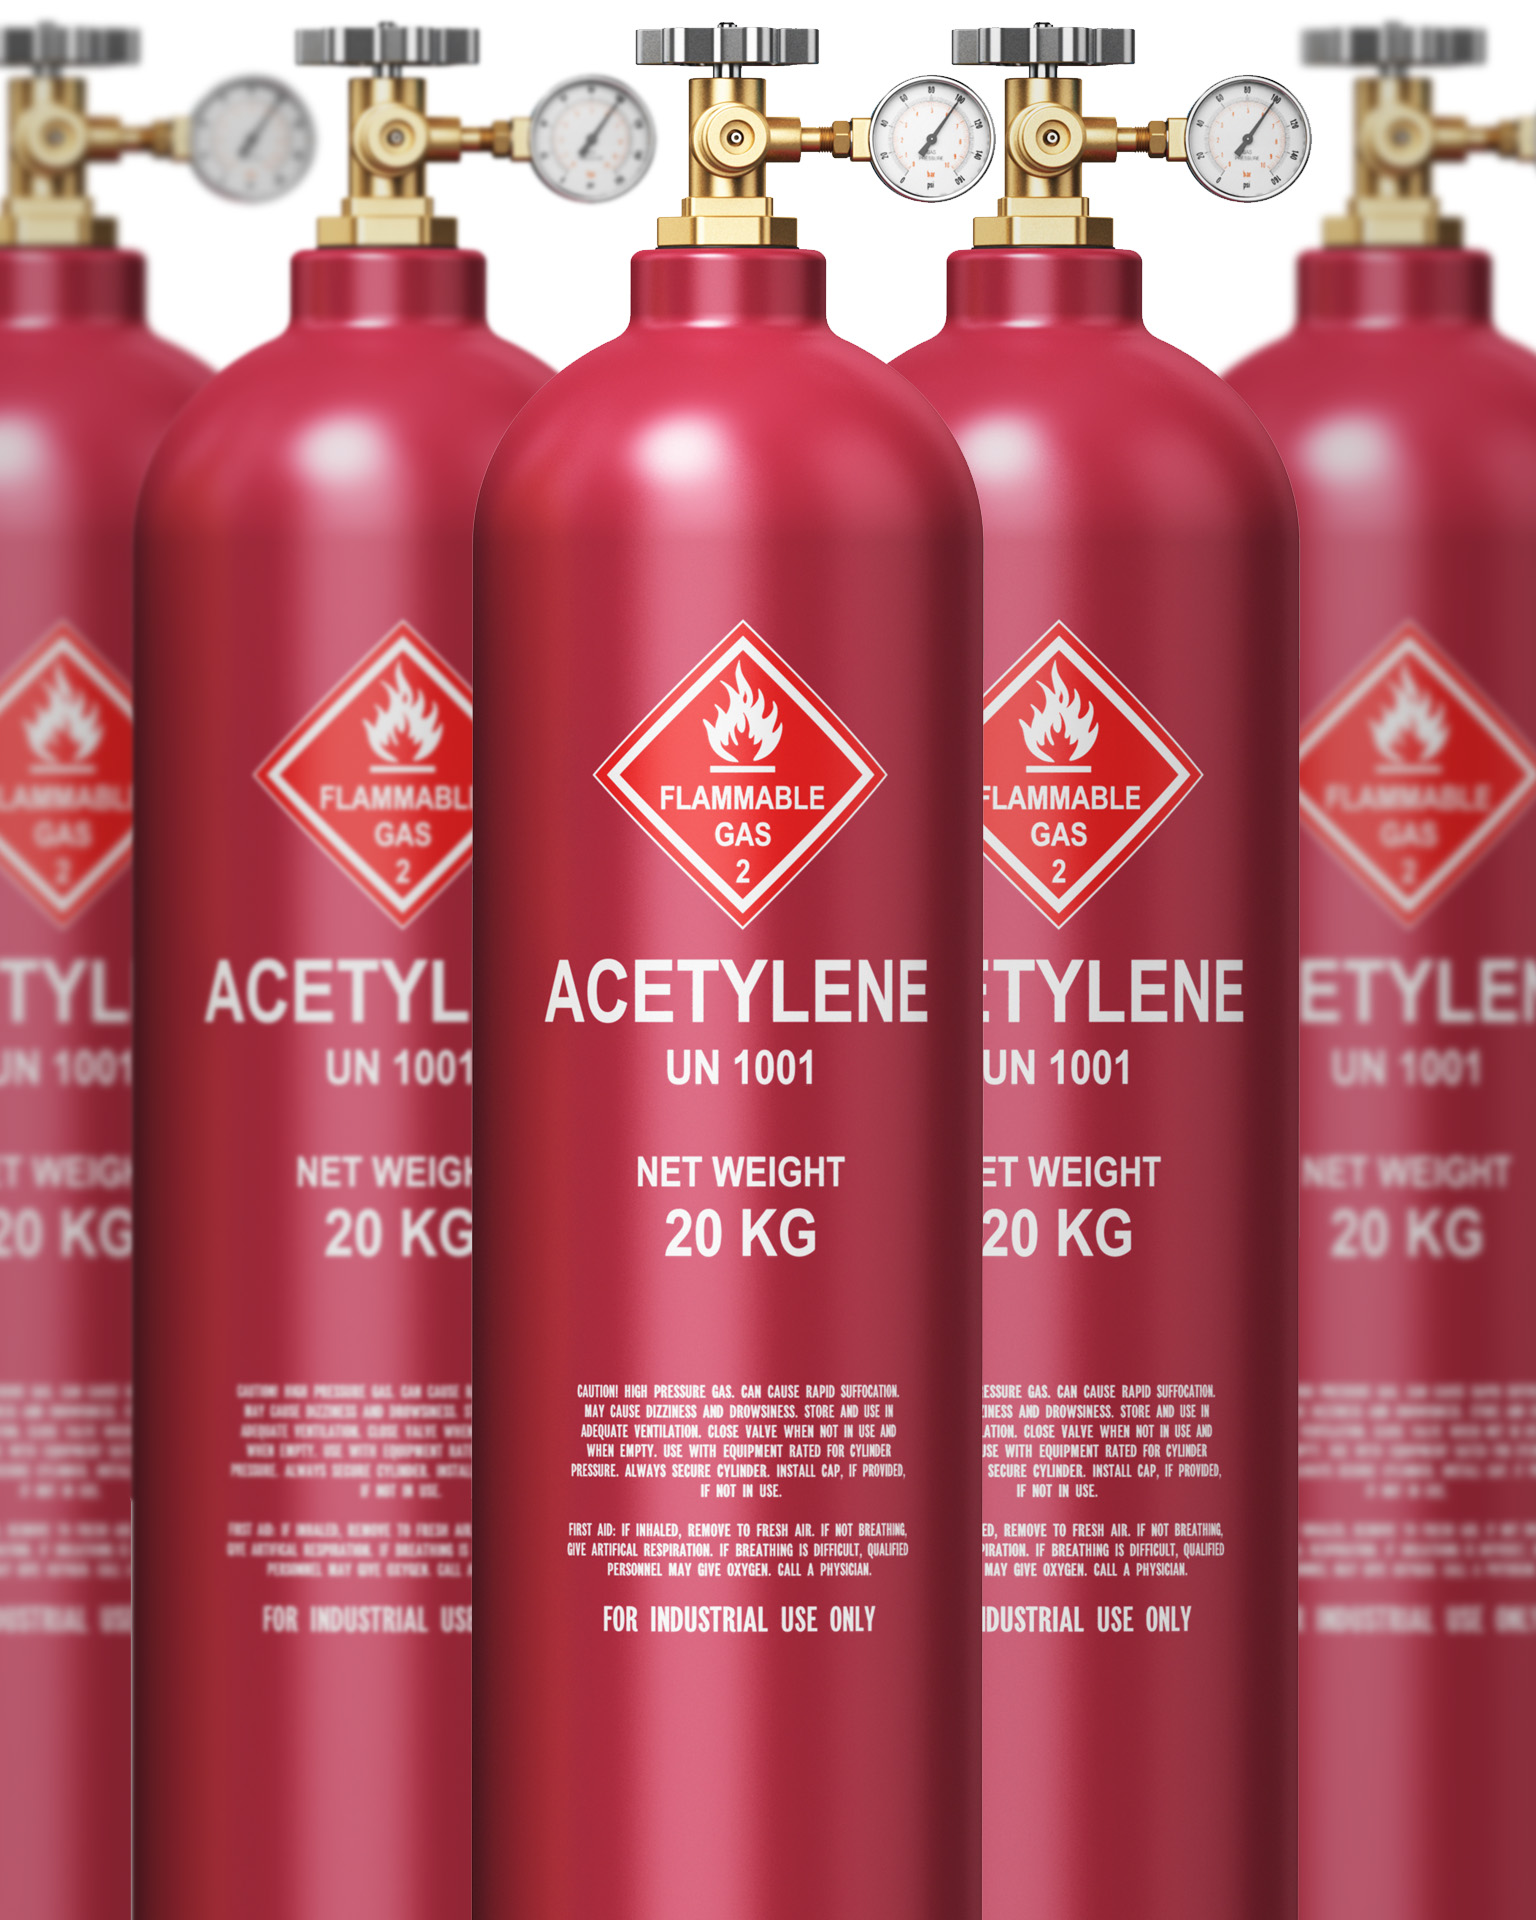 IMG - Web - Buy Acetylene